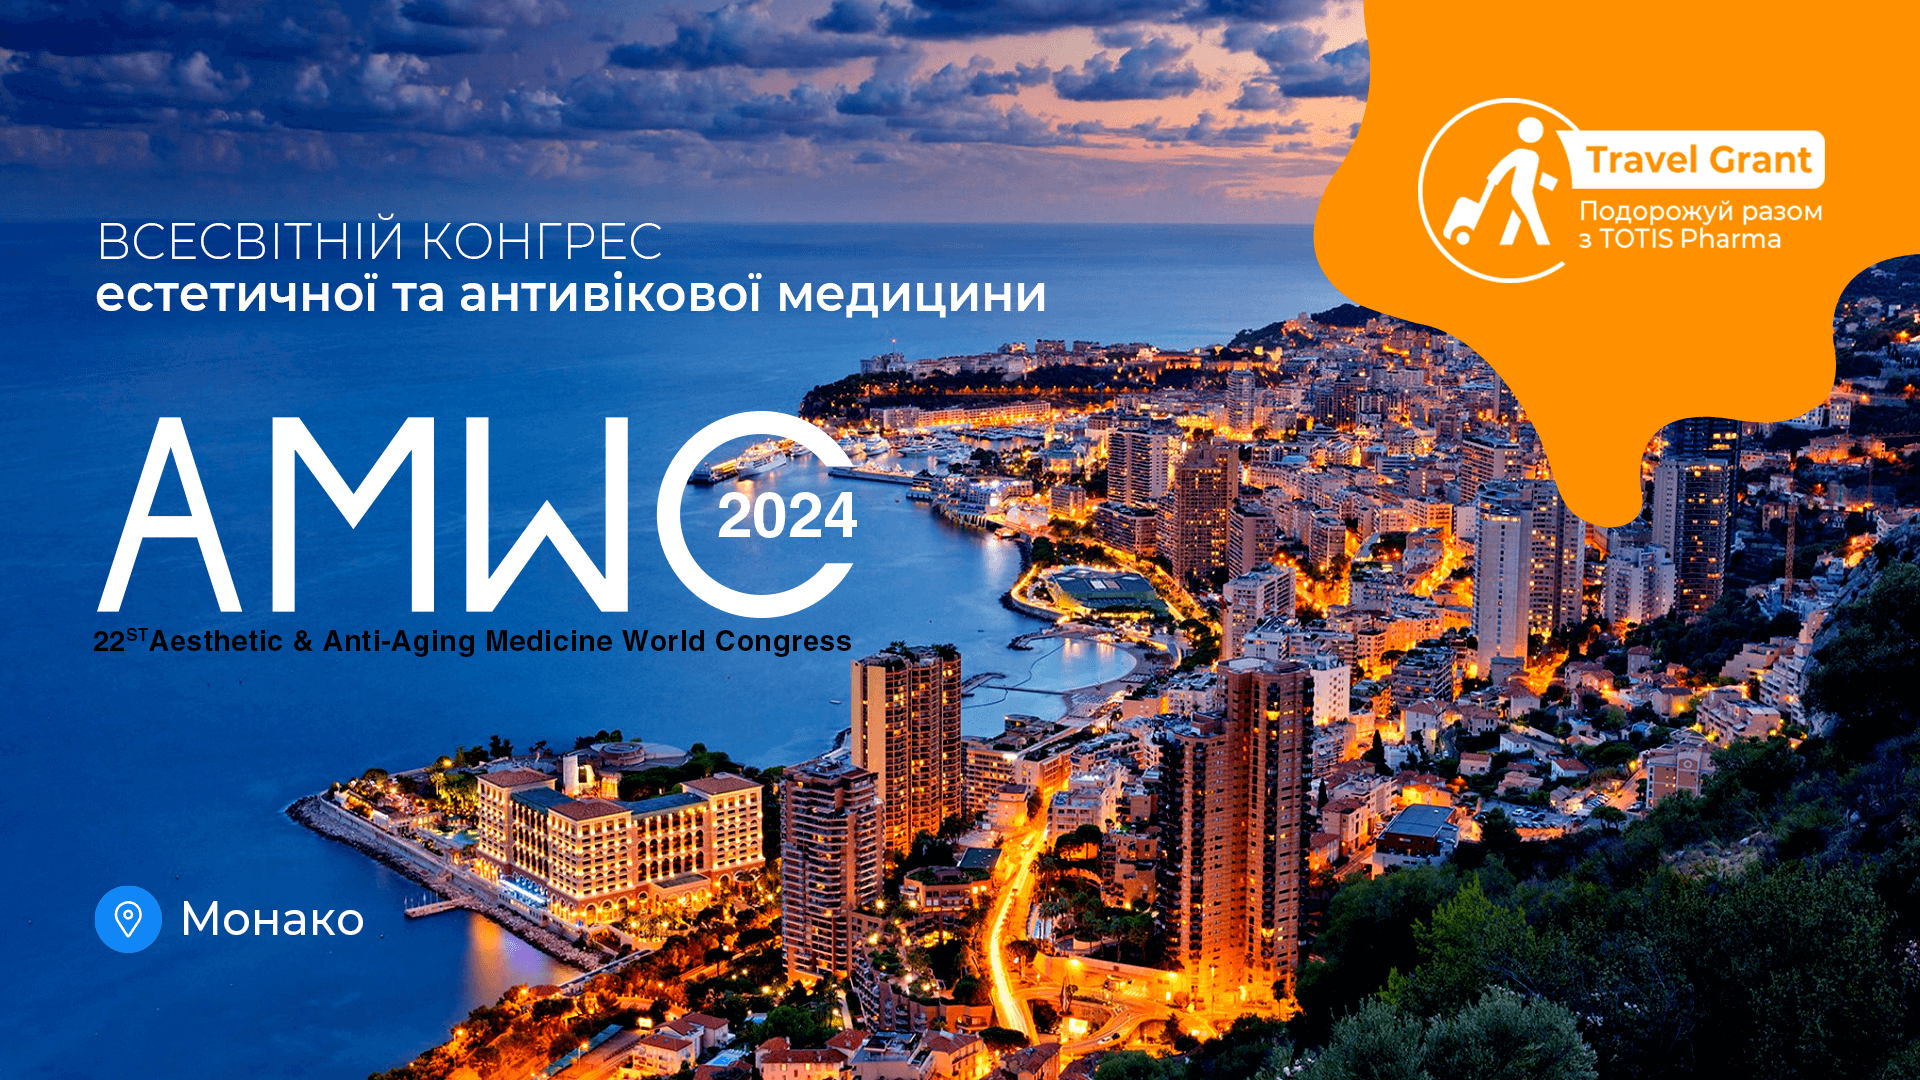 AMWC Monaco 2024